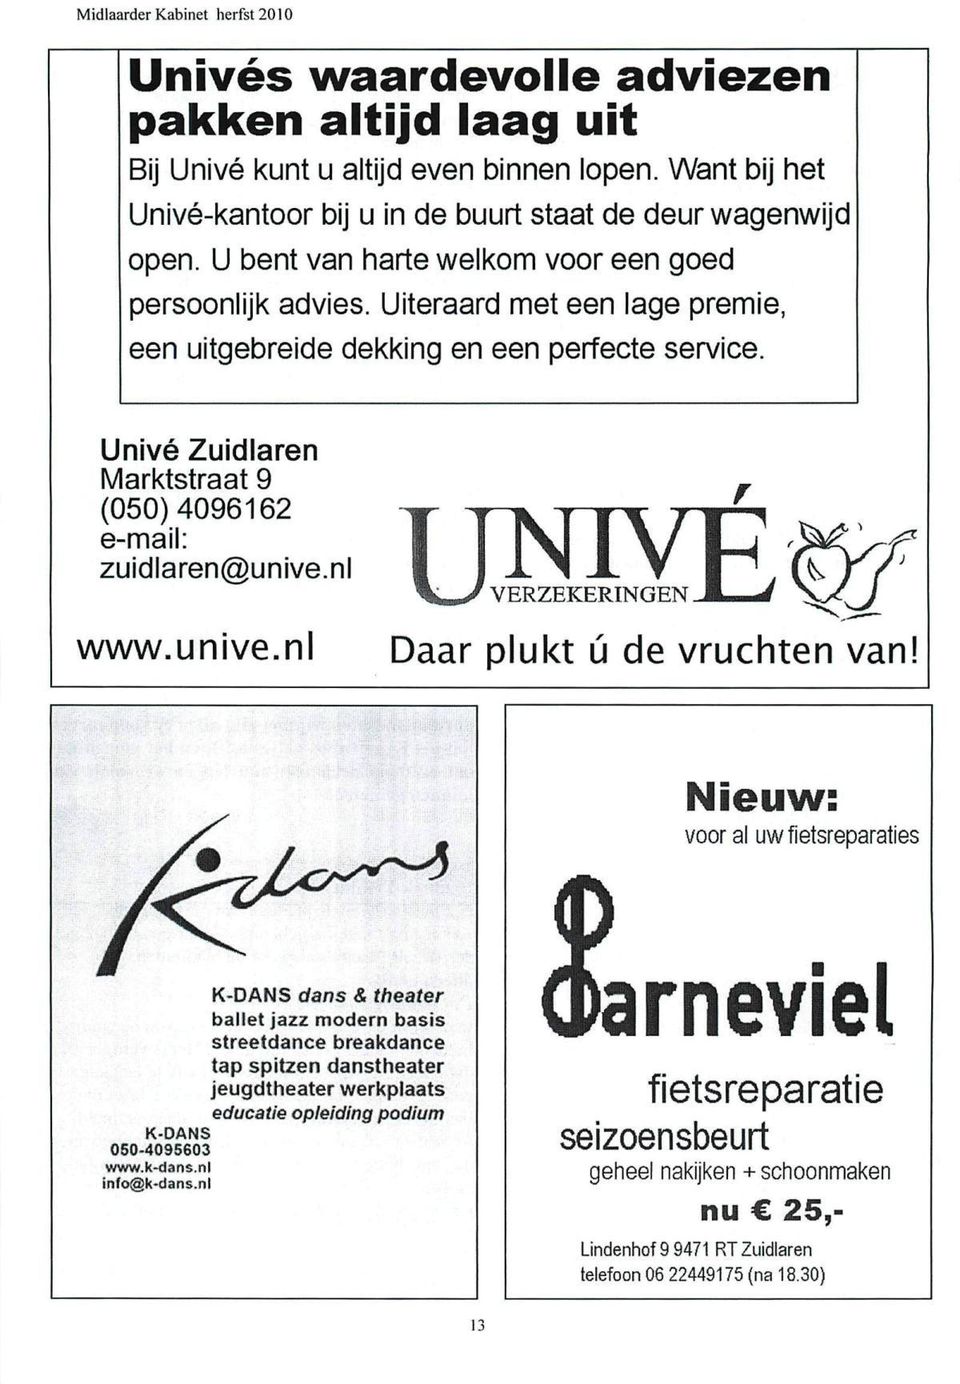 Univé Zuidlaren Marktstraat 9 (050)4096162 e-mail: zuidlaren@unive.nl www.unive.nl TJNWR \ mm J VERZEKERINGEN 1 J Daar plukt ú de vruchten van!